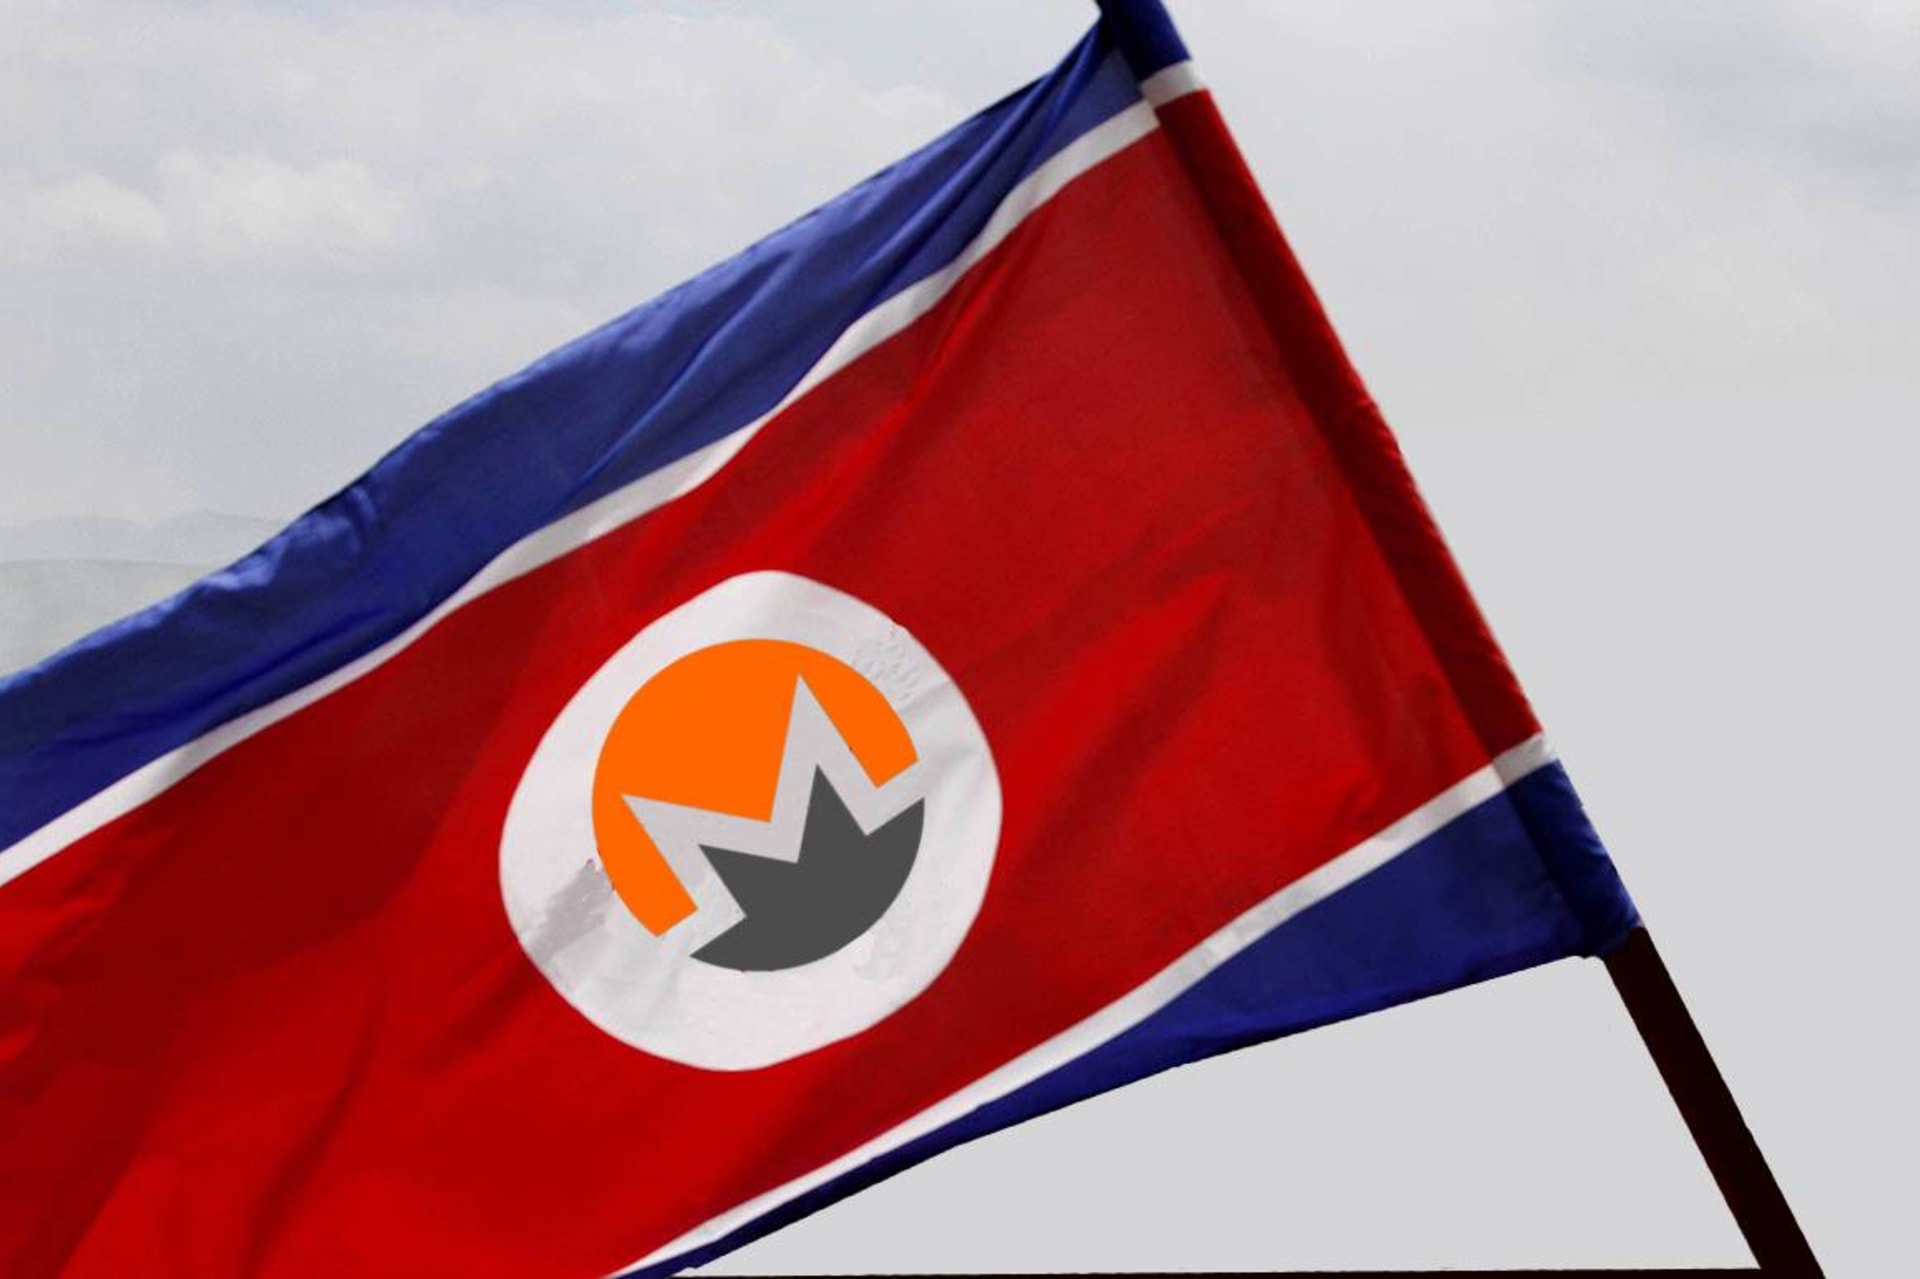 Stane se ze severokorejské vlajky vlajka kryptoměny Monero